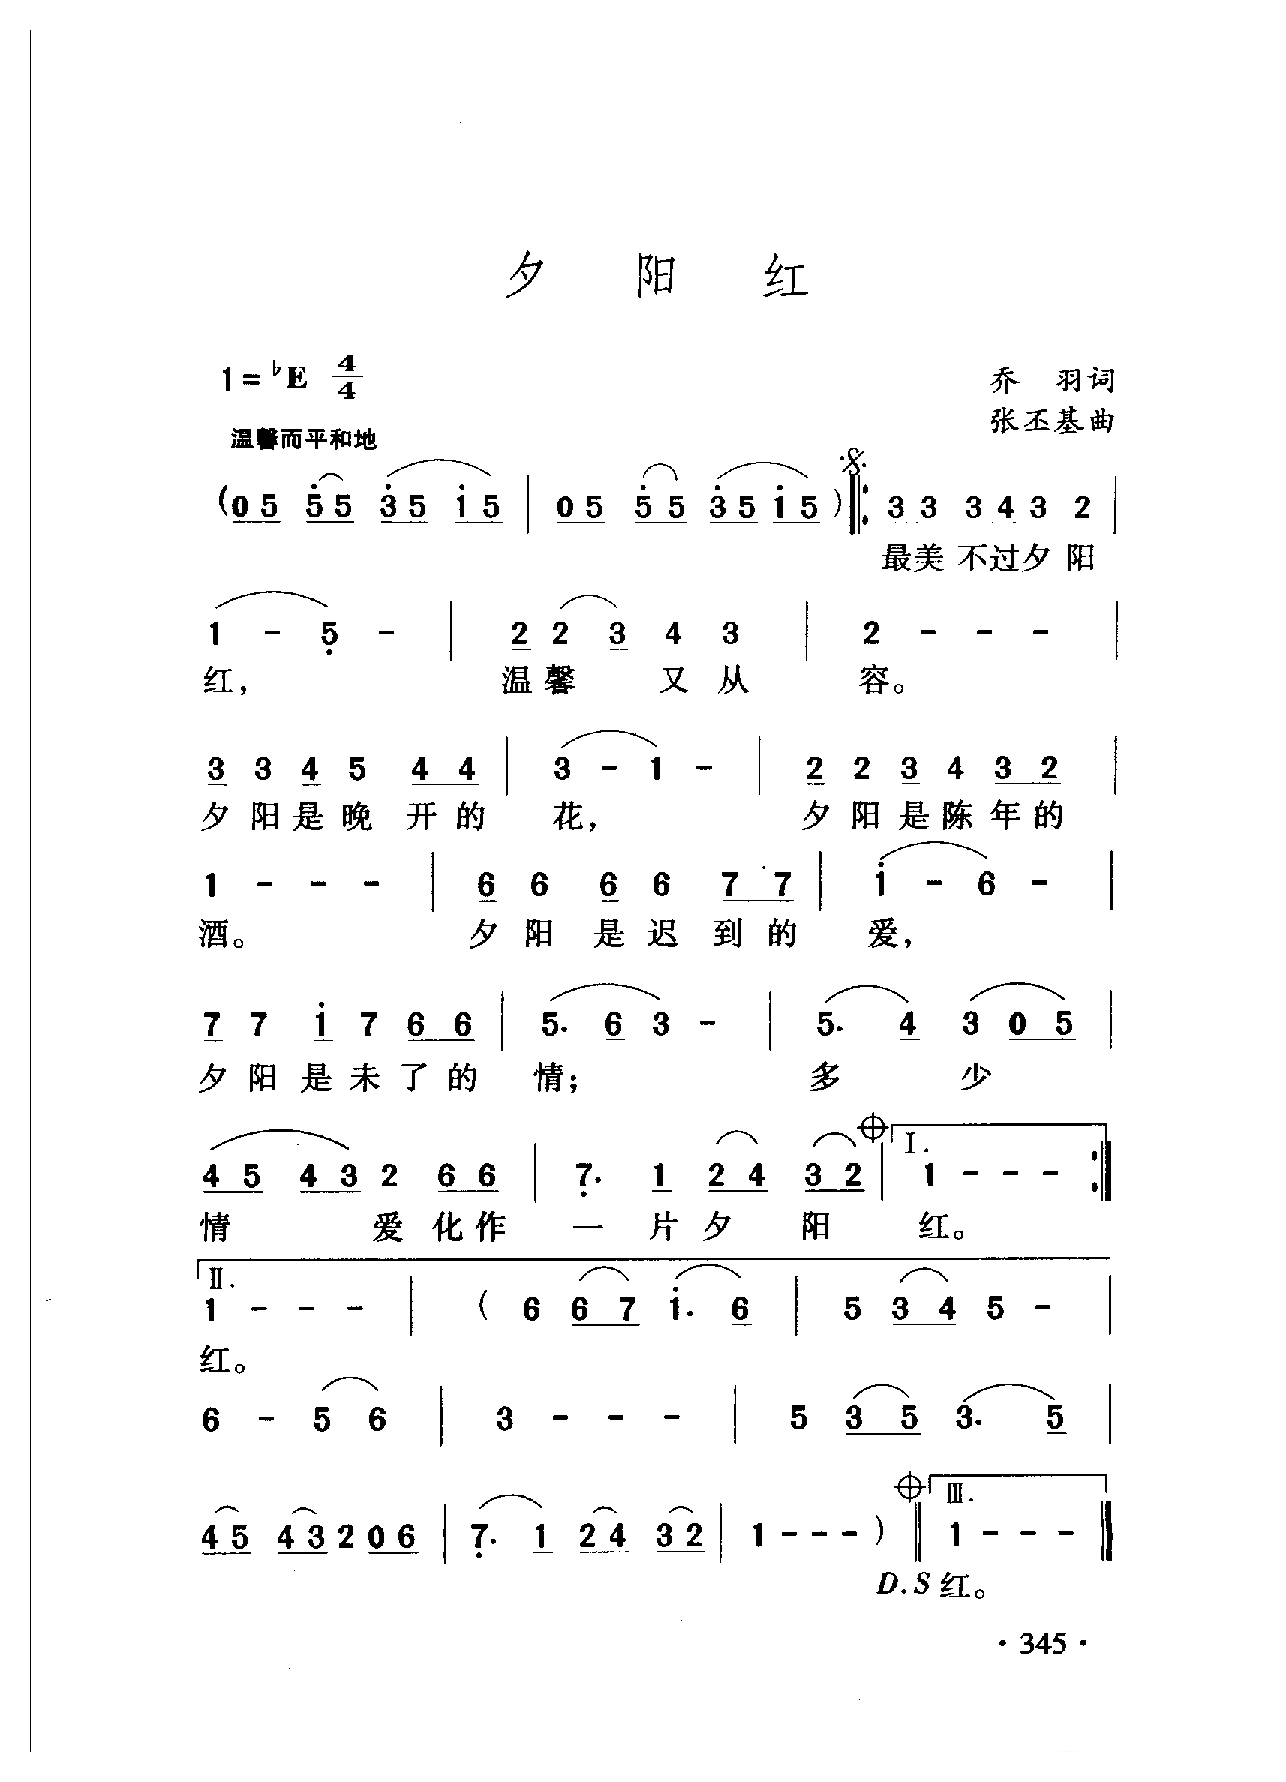 中国名歌[夕阳红]乐谱